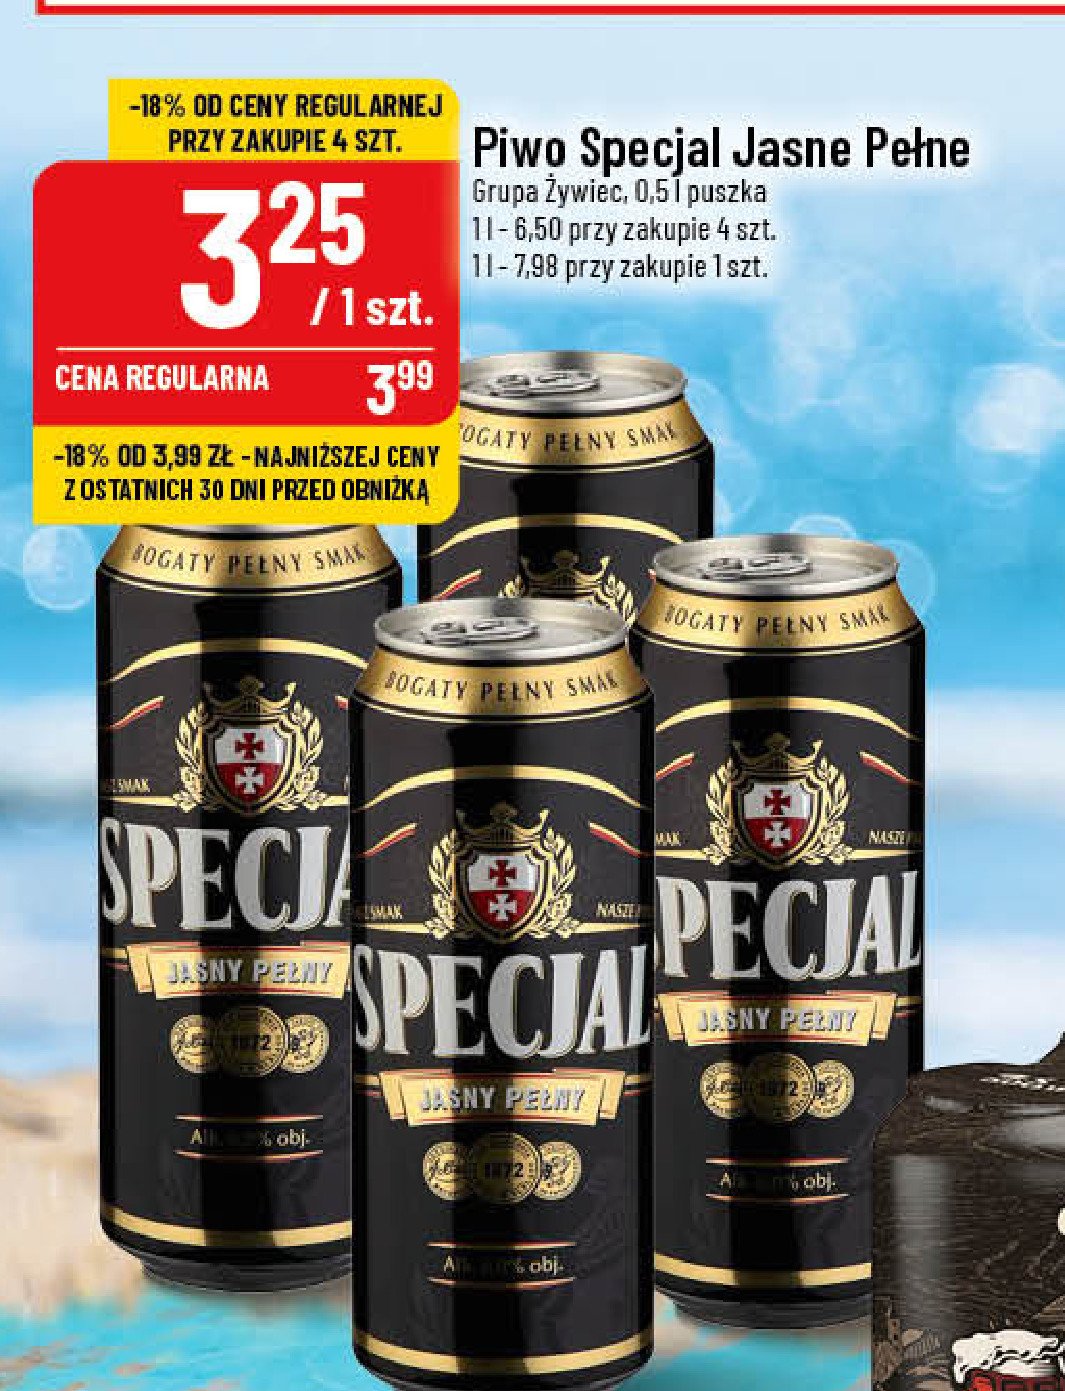 Piwo Specjal jasny pełny promocja